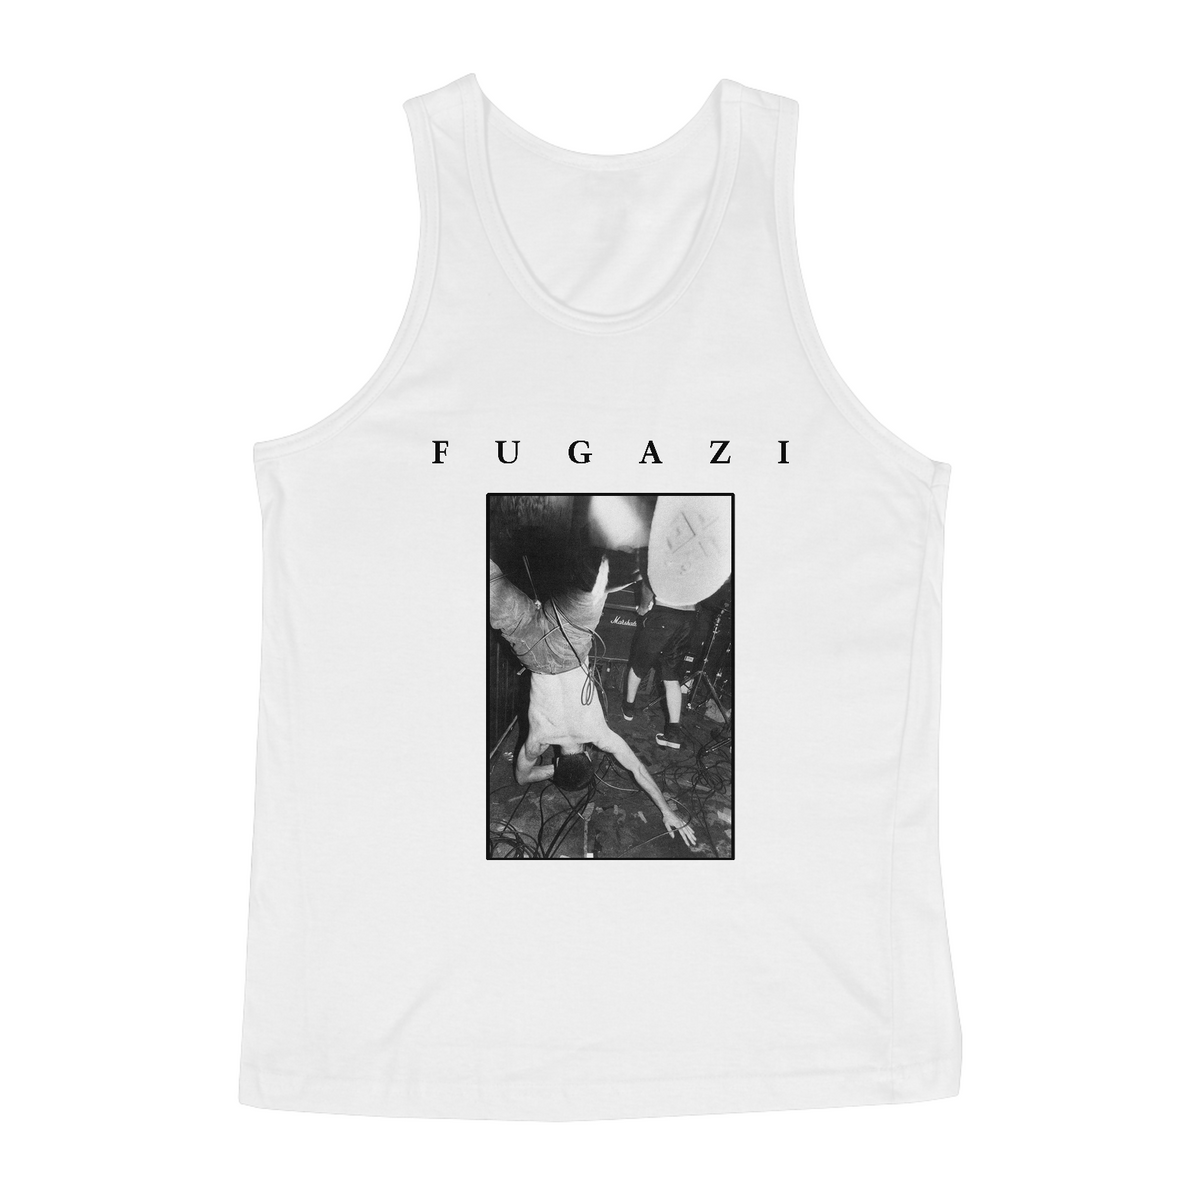 Nome do produto: FUGAZI